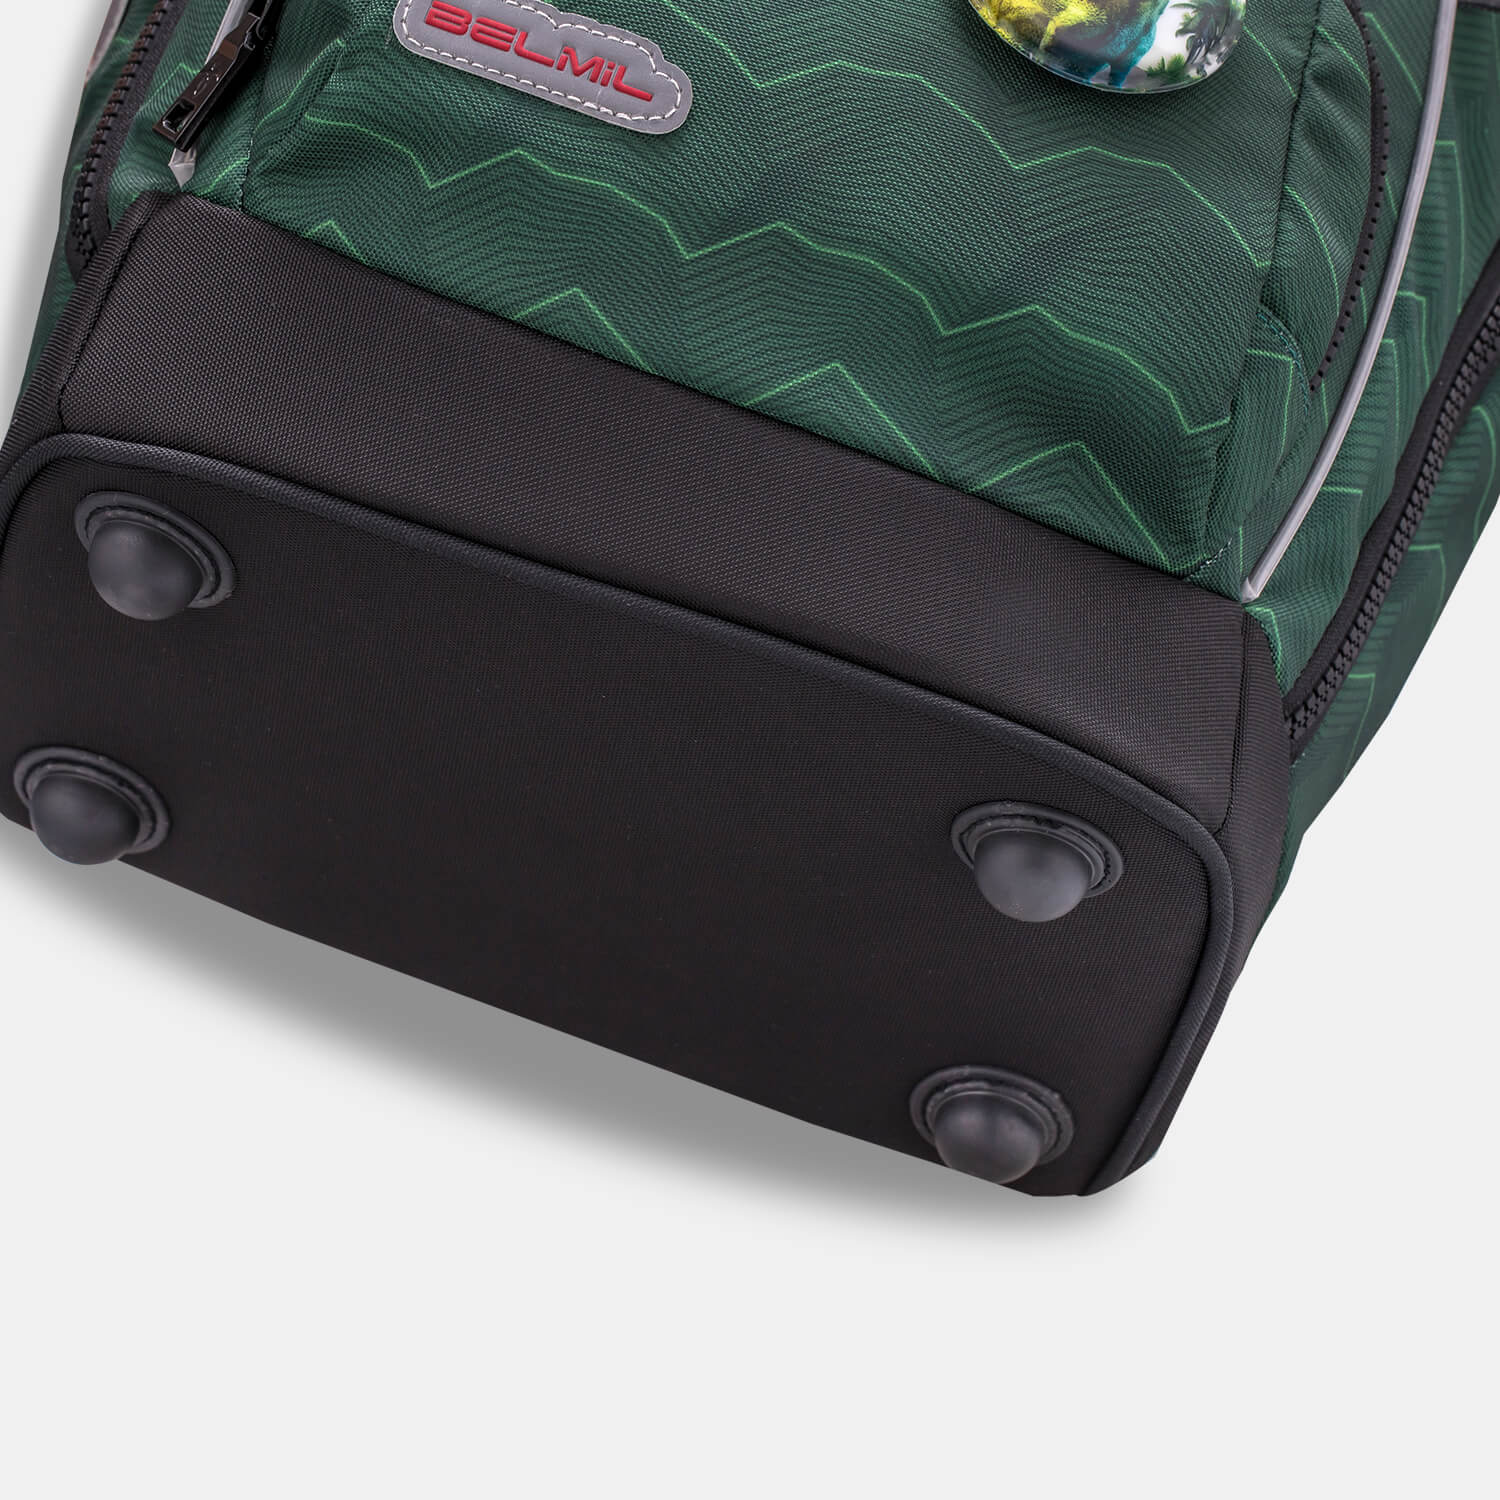 Comfy Plus Twist of Lime Schoolbag set 5pcs.